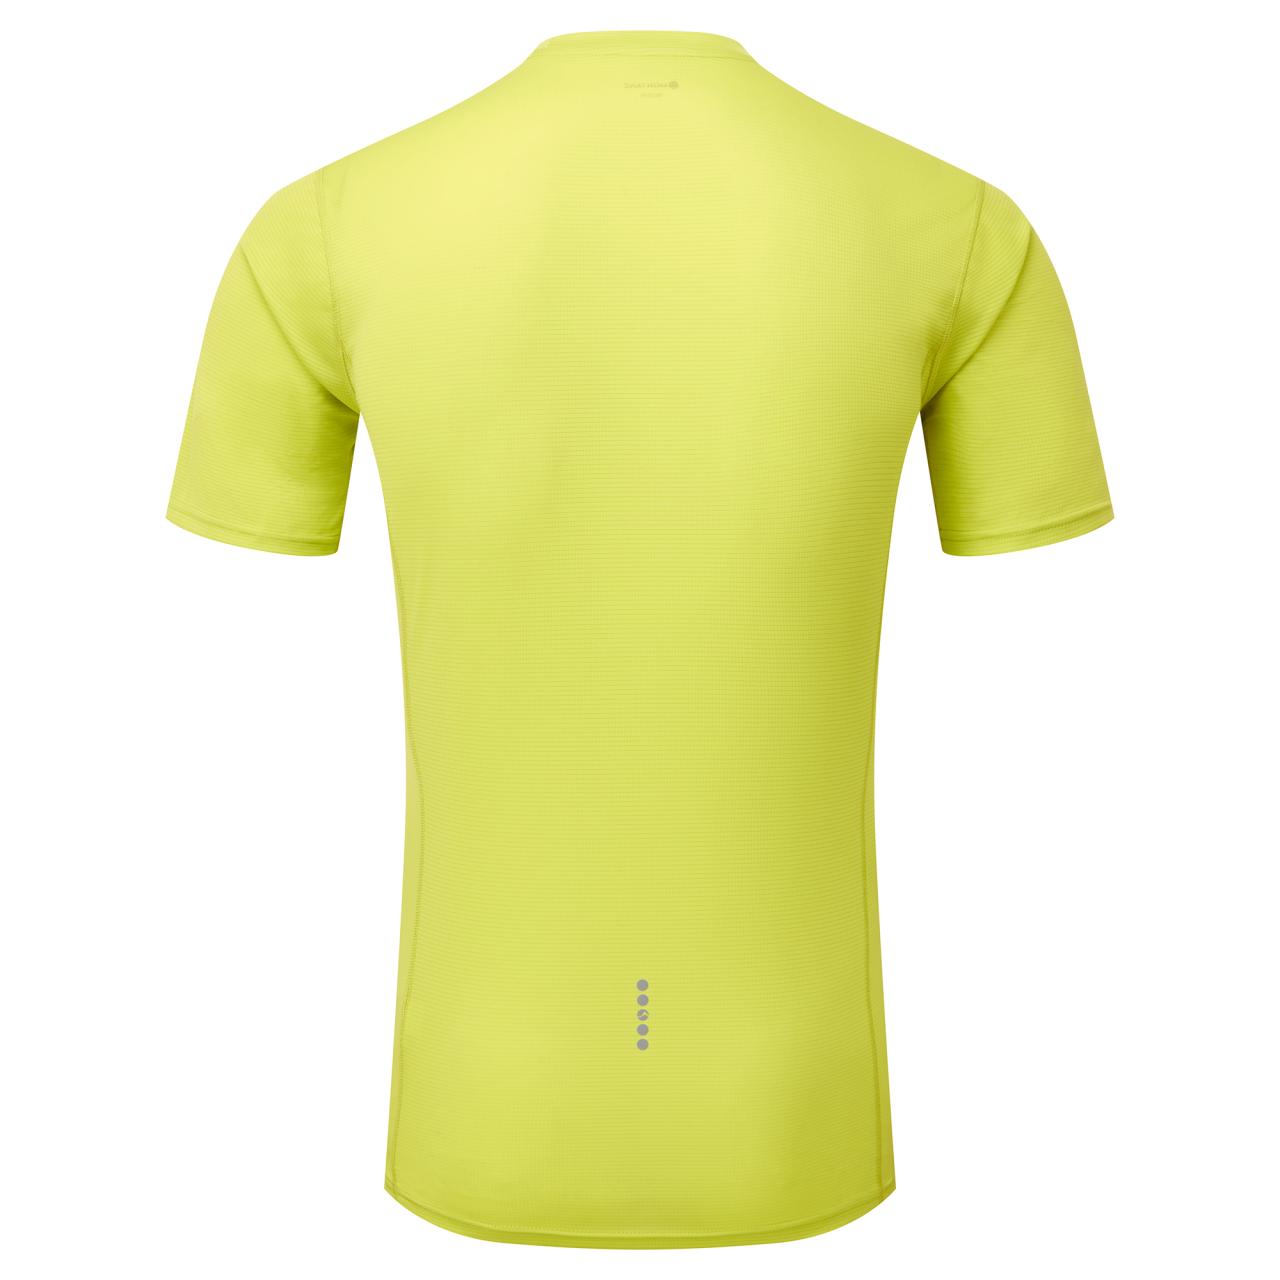 DART NANO T-SHIRT-CITRUS SPRING-S pánské triko žlutozelené